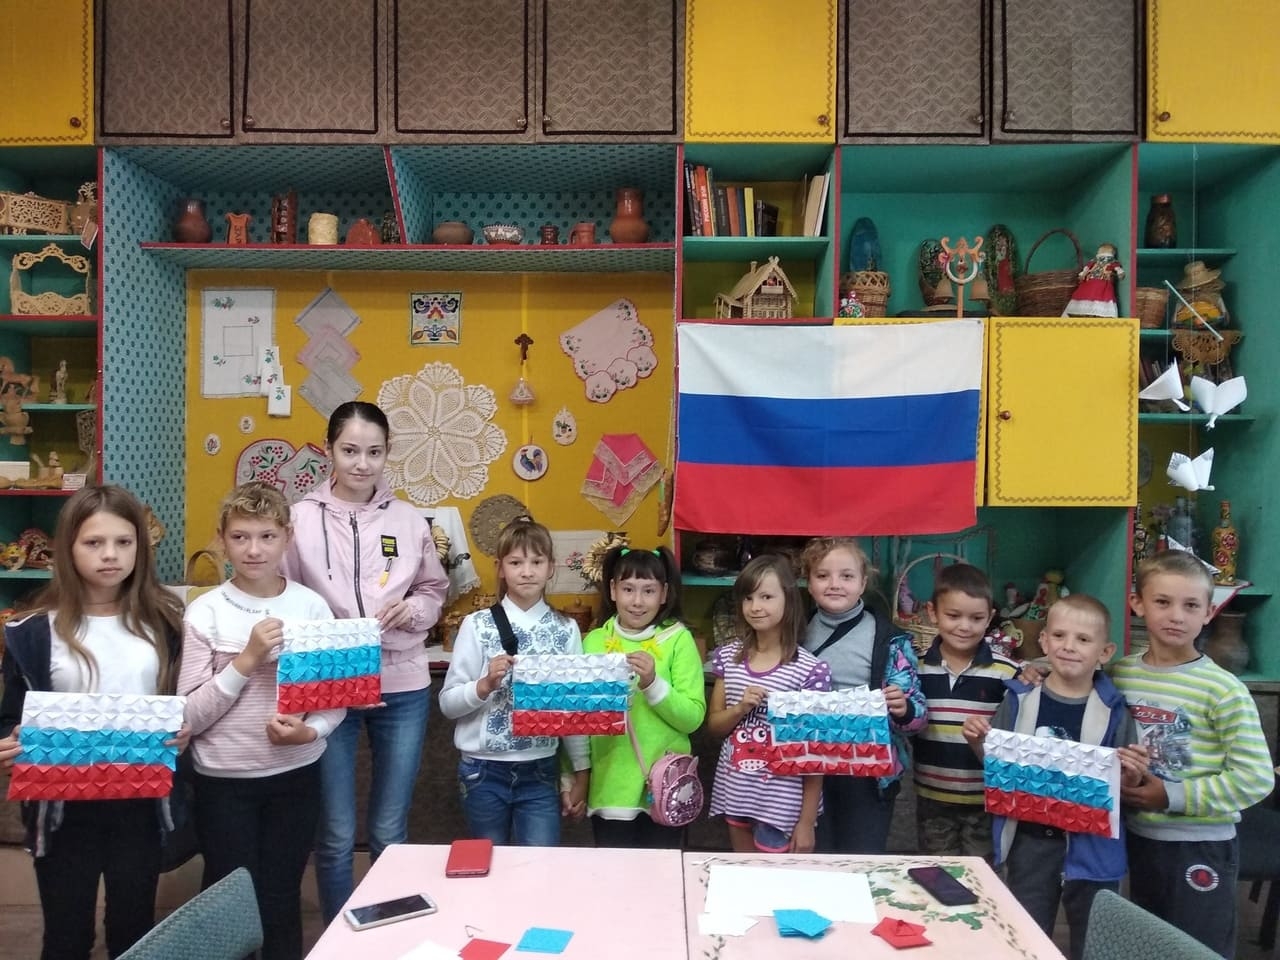 Культурно-досуговые учреждения Шуйского муниципального района присоединились к Всероссийской акции «Мой флаг, моя история»